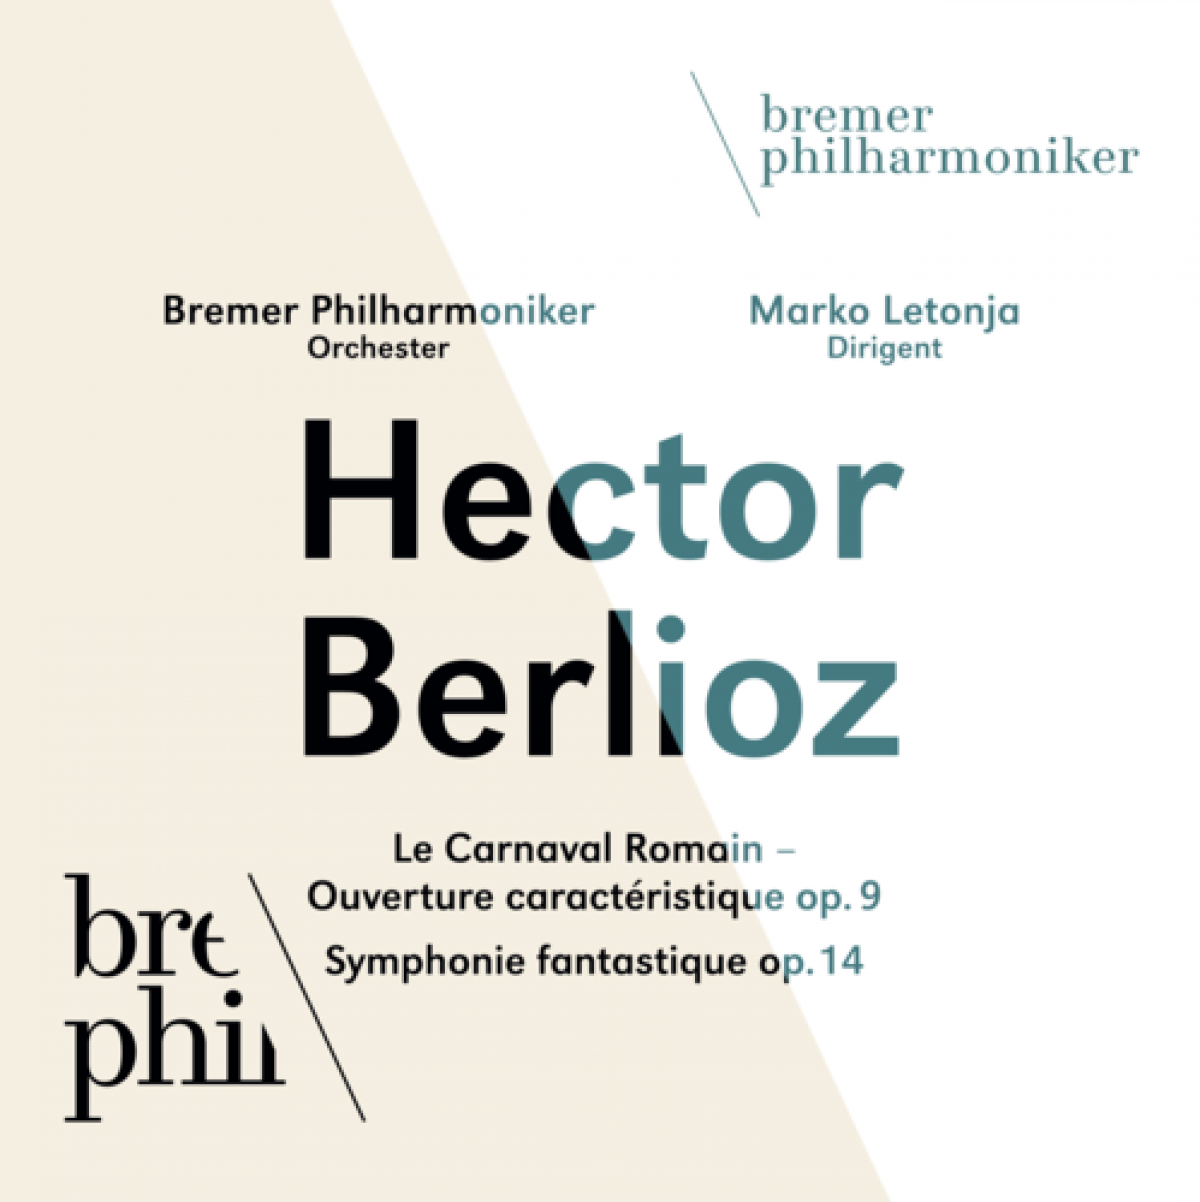 CD-Cover "Hector Berlioz" gespielt von den Bremer Philharmonikern